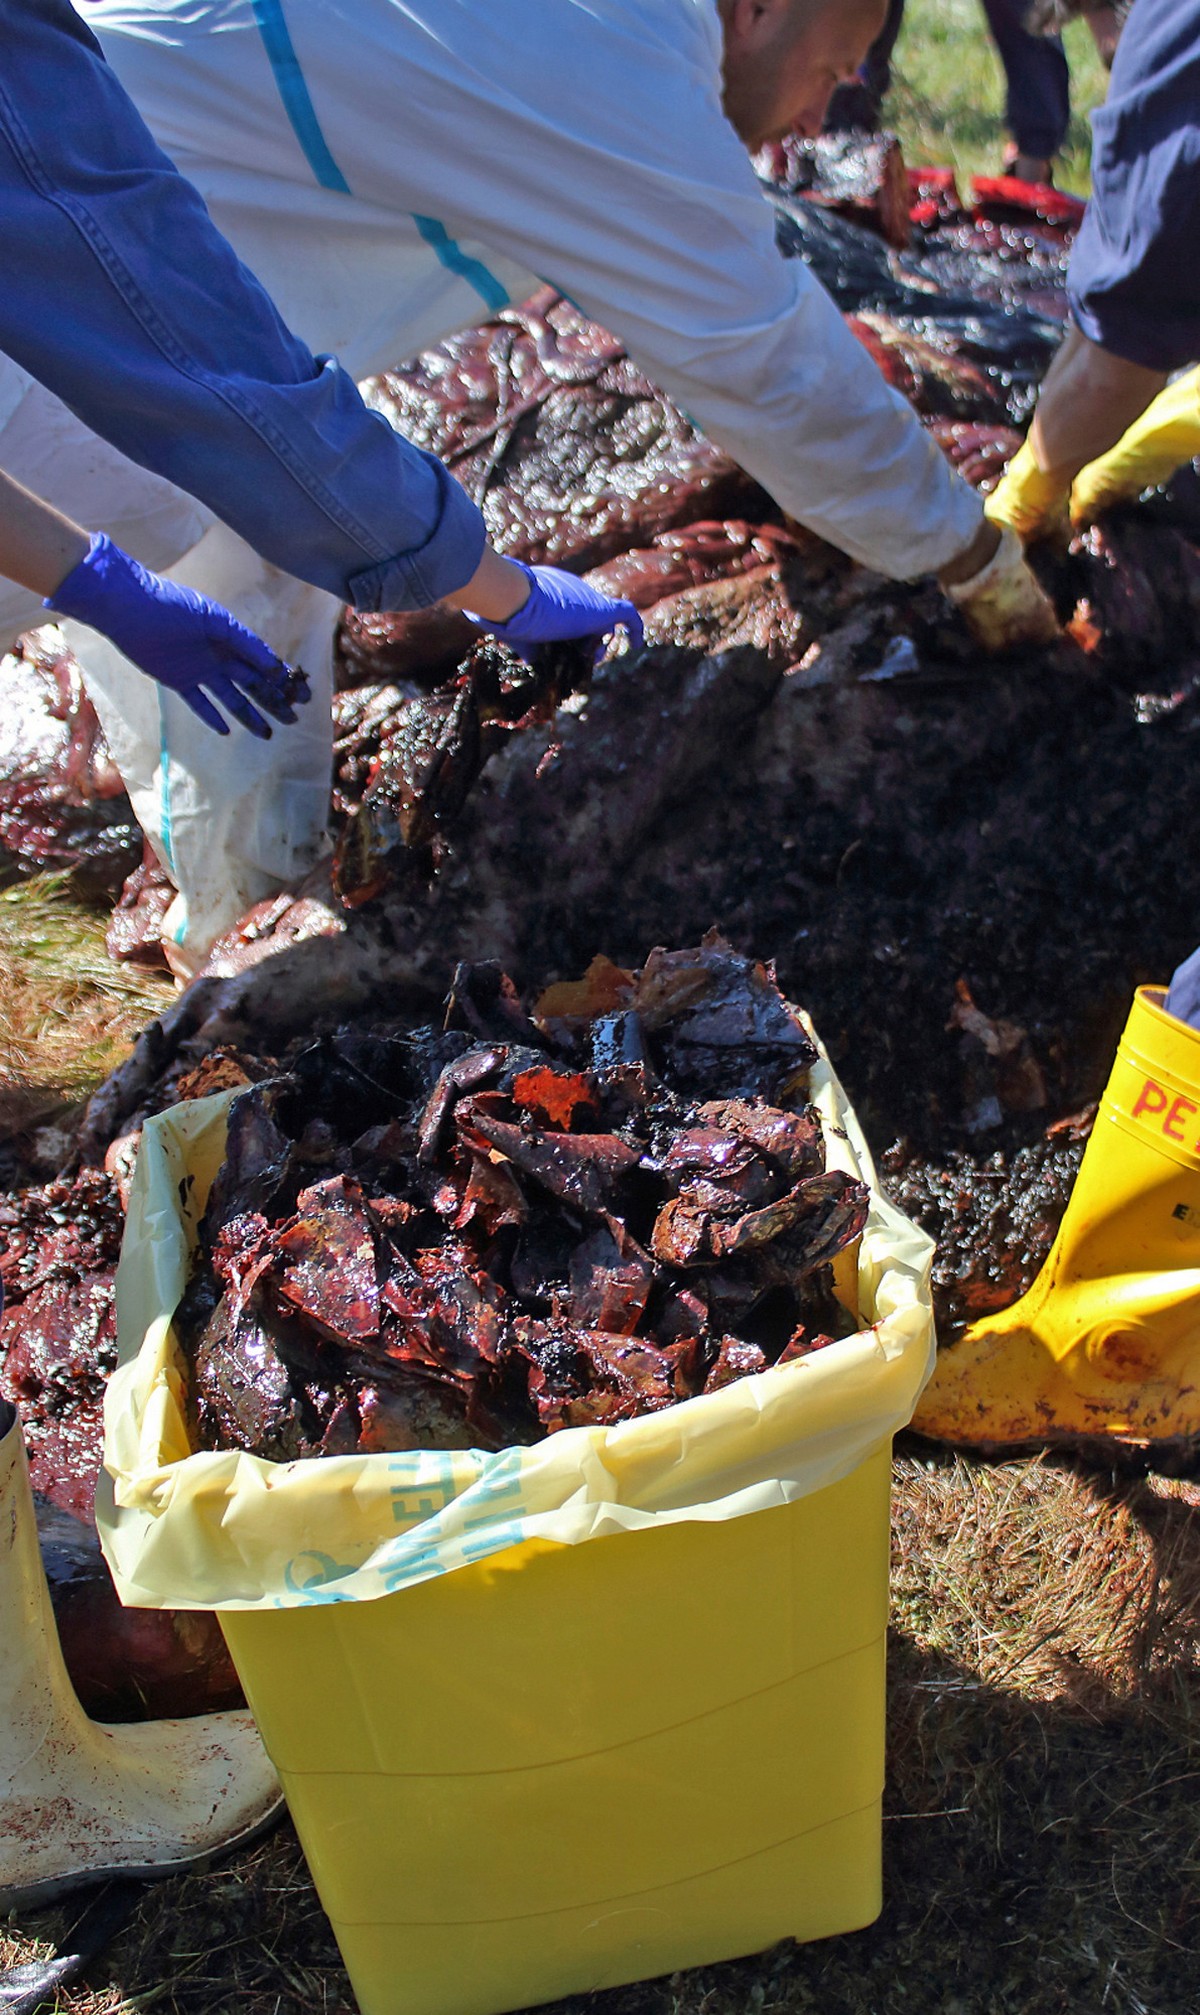 В желудке погибшего кита обнаружили 22 кг пластиковых отходов